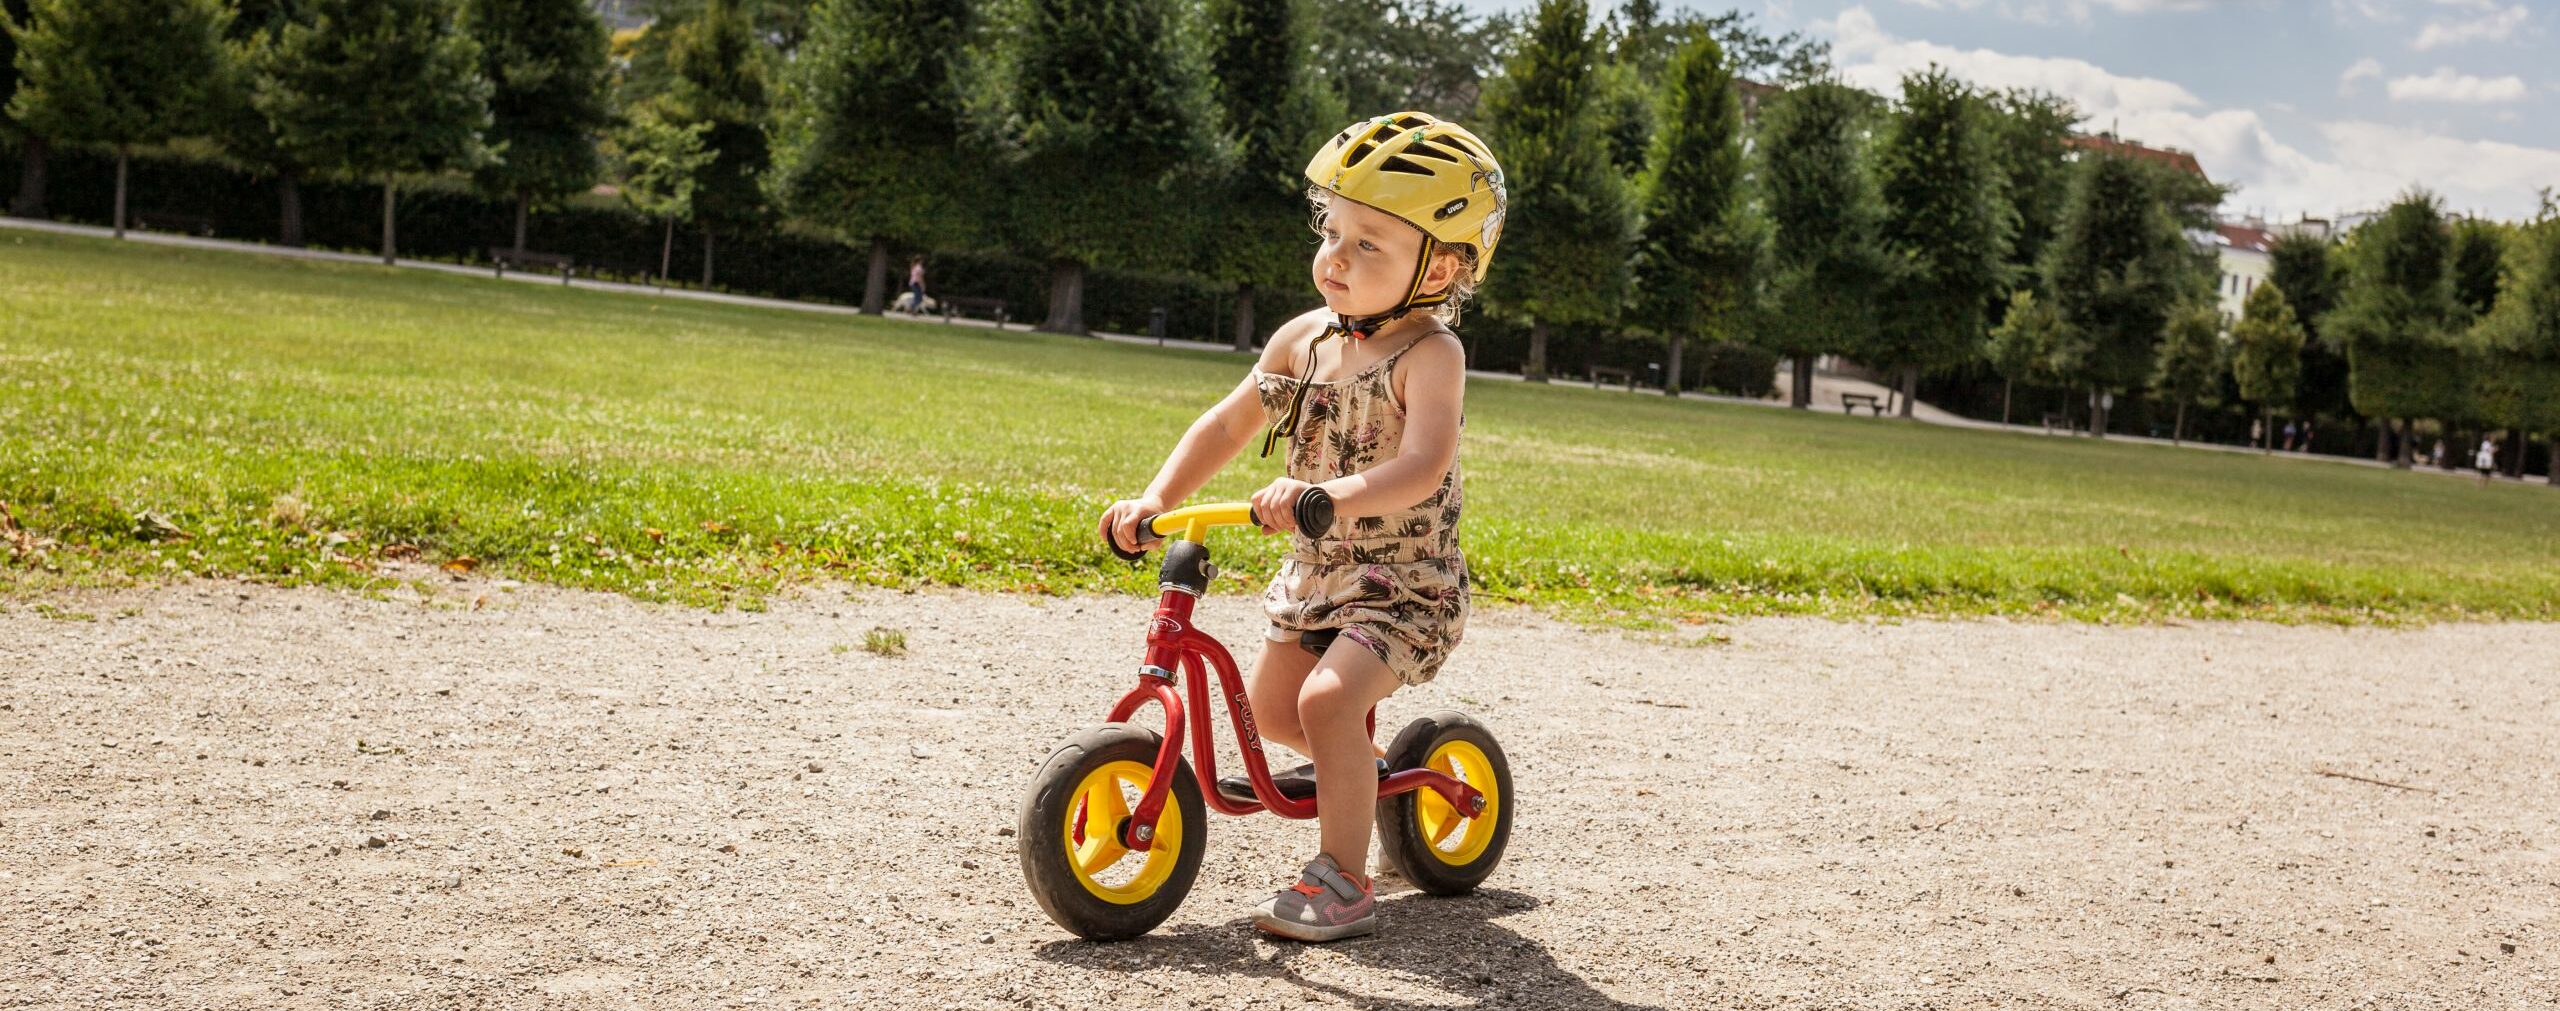 Kindergartenkind fährt mit Laufrad über einen schotter-weg